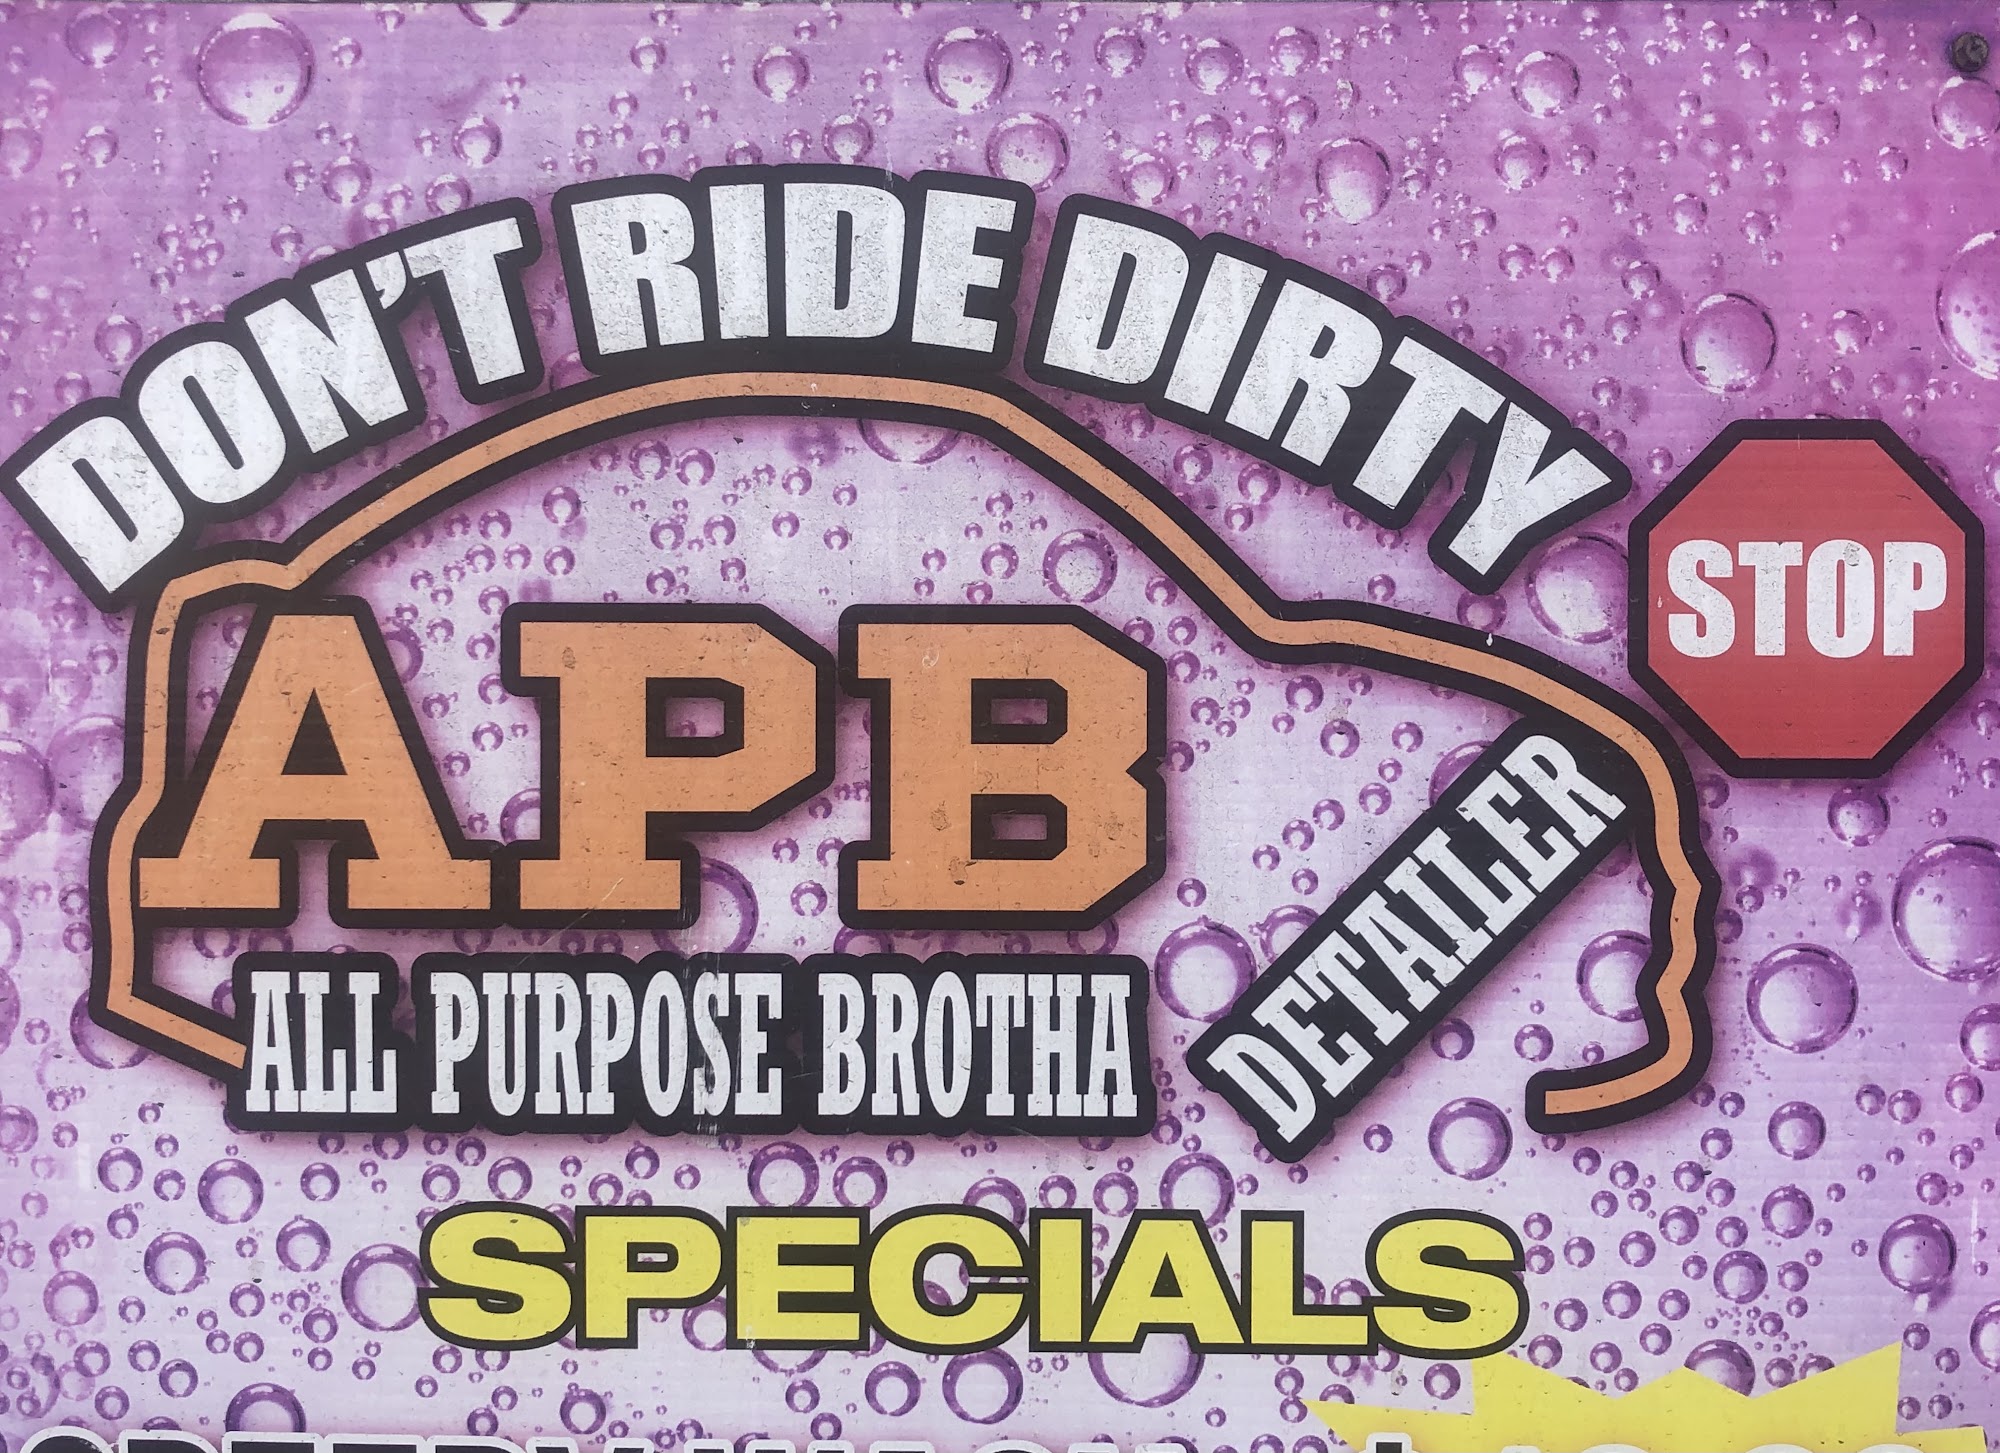 APB Detailing & Mobile wash